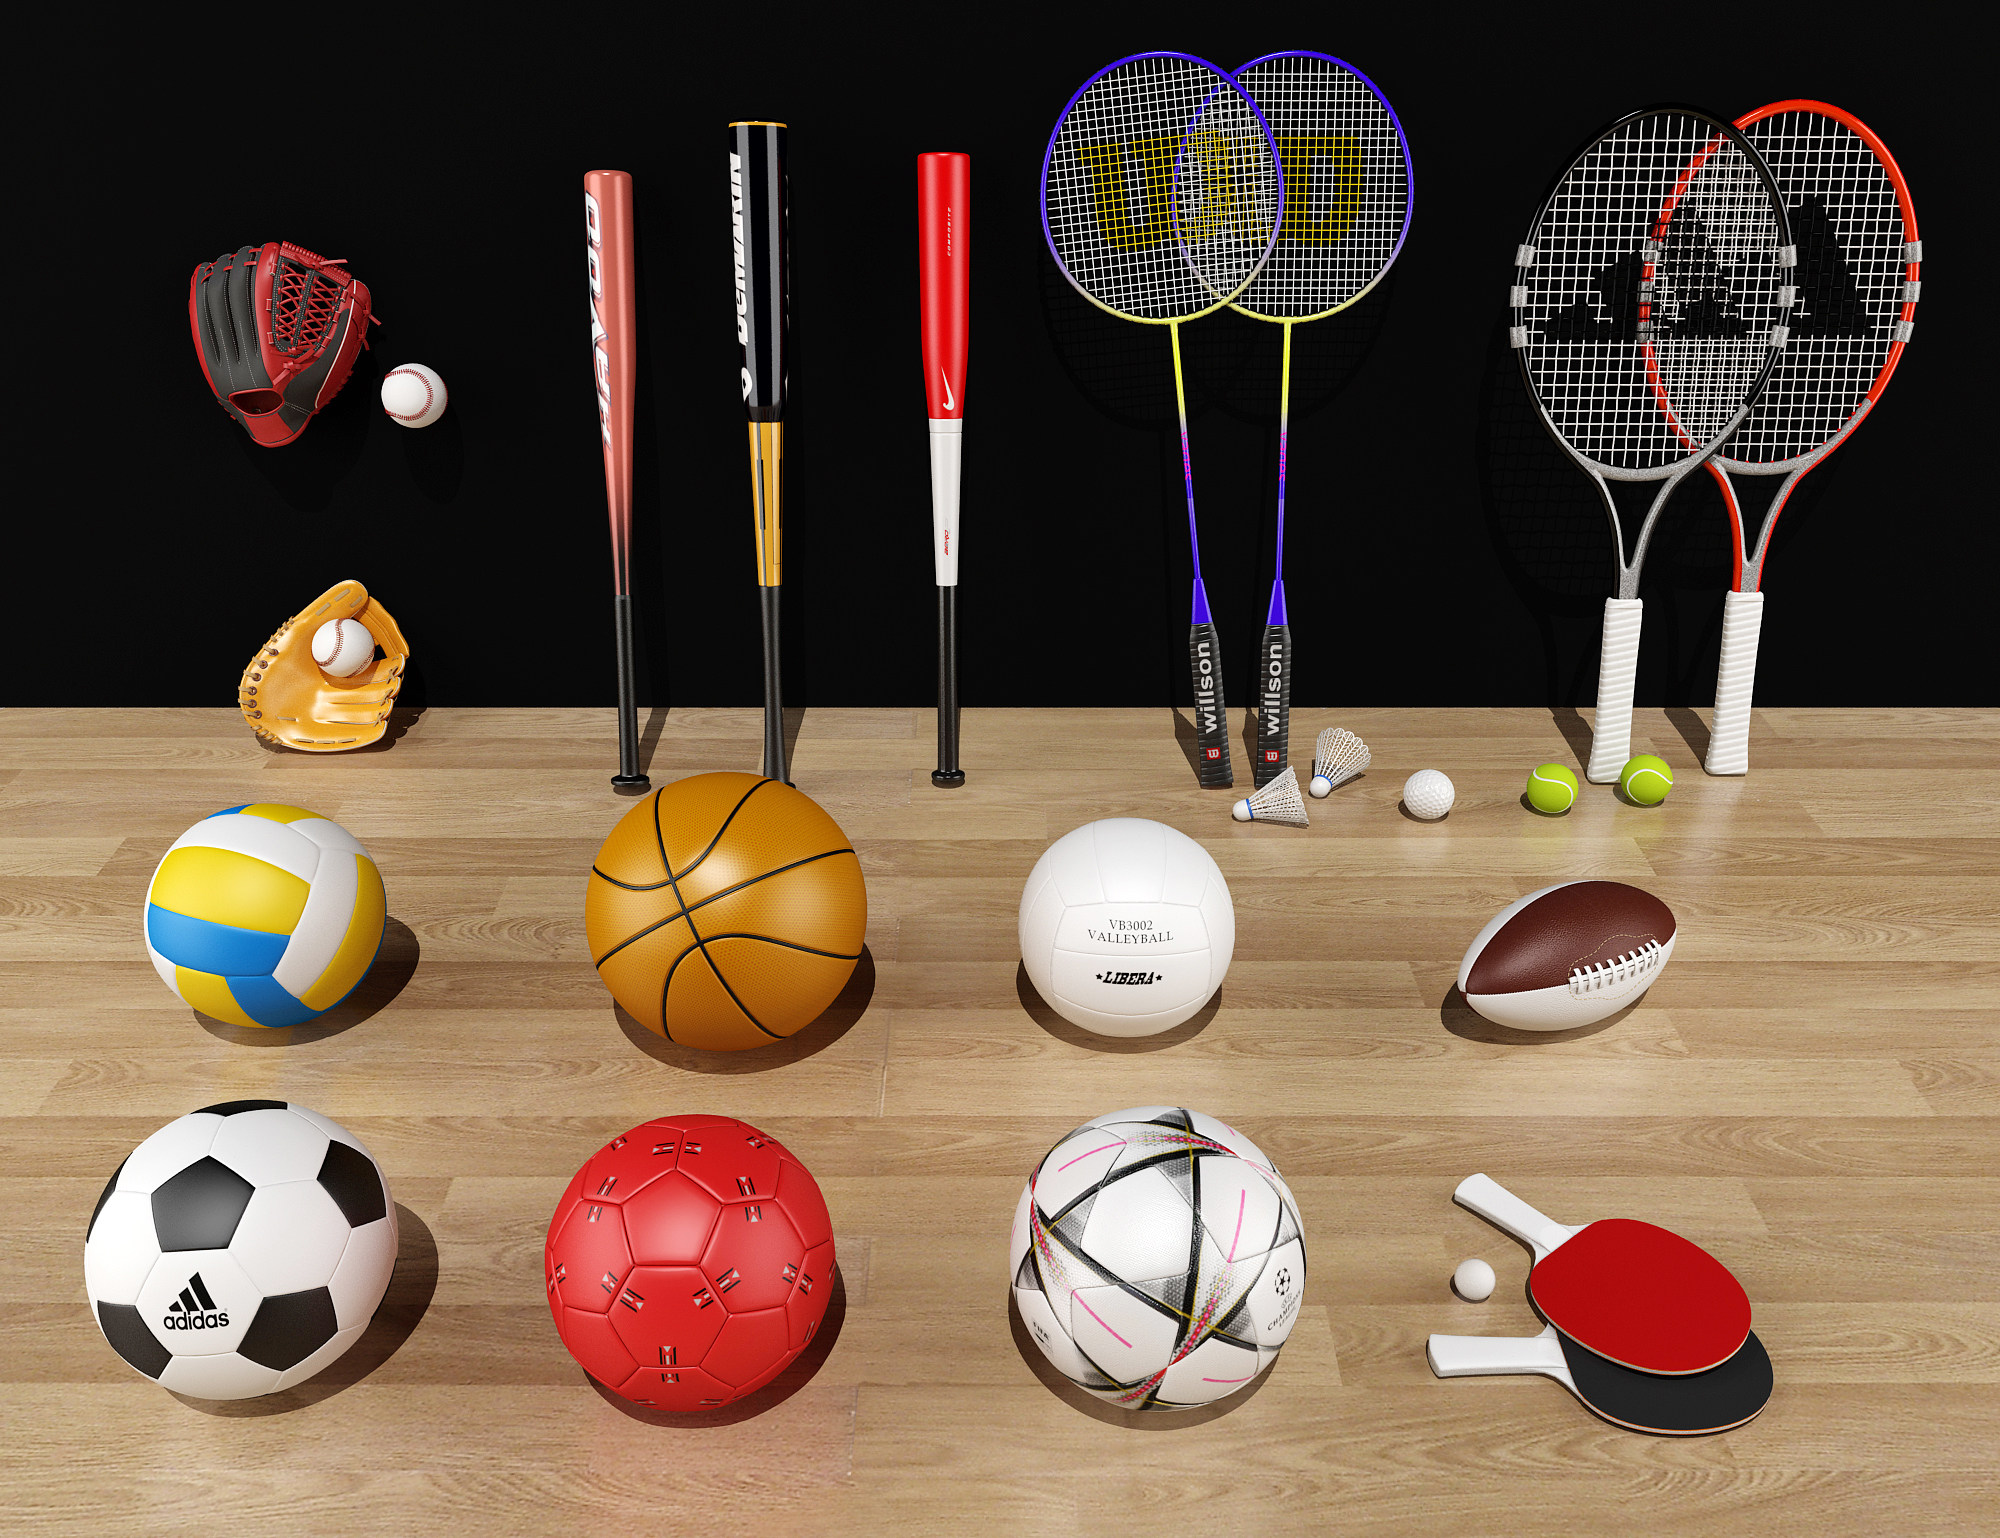 ，网球，羽毛球拍，足球篮球，乒乓球，棒球手套， 3d模型下载